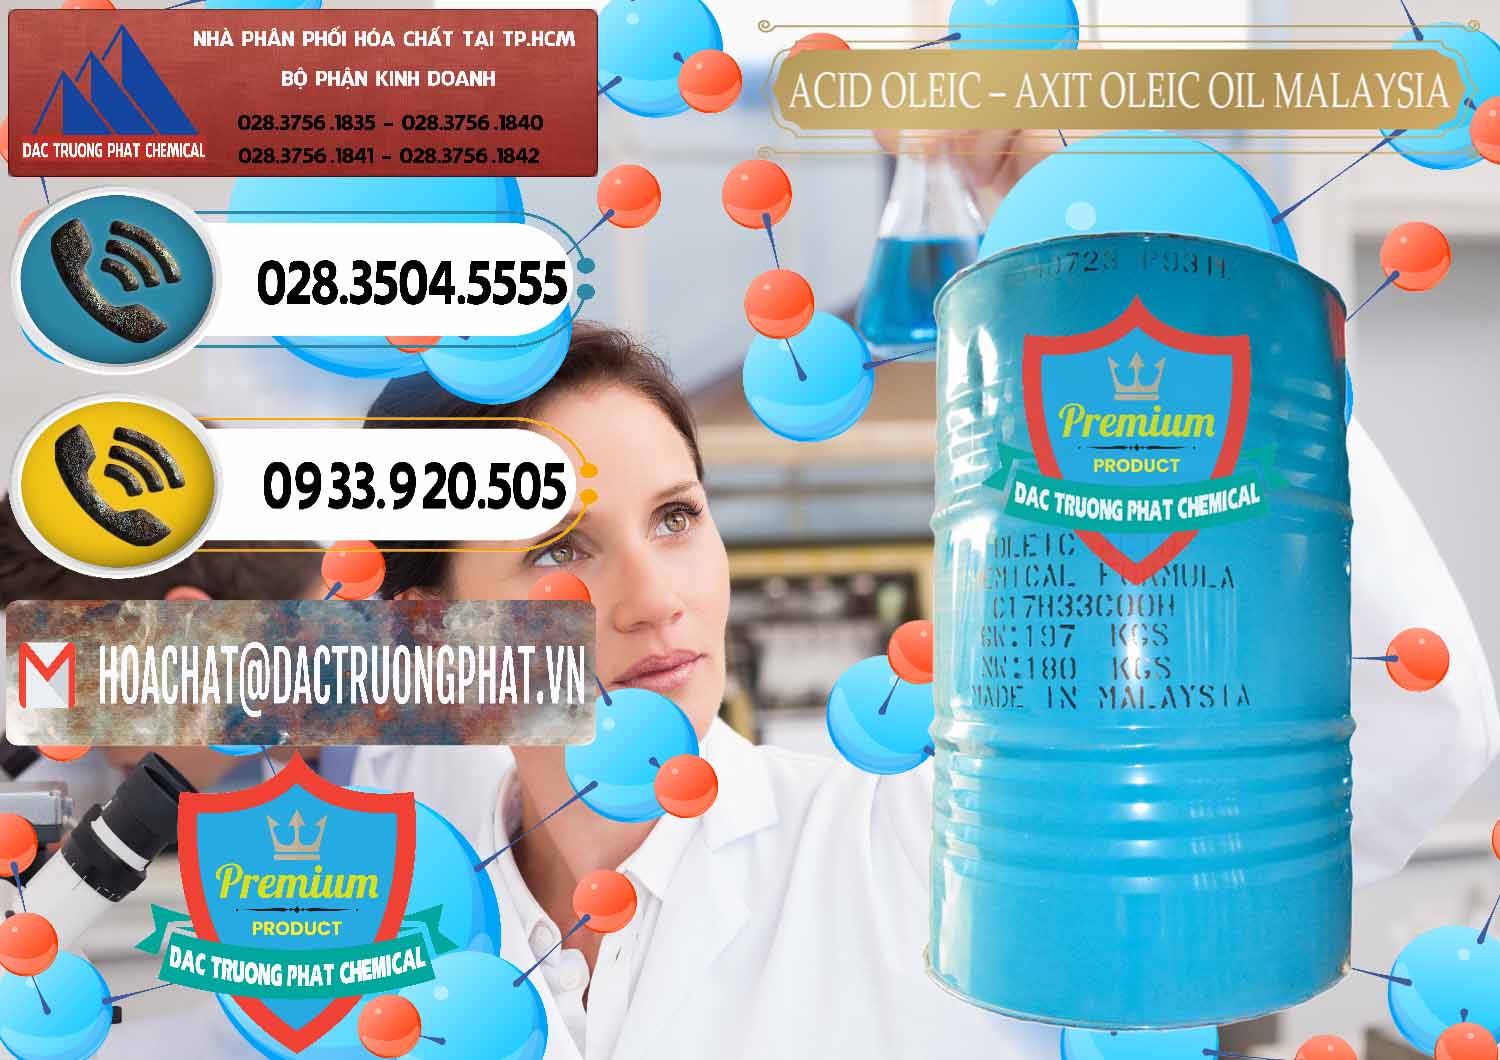 Nơi chuyên cung cấp ( bán ) Acid Oleic – Axit Oleic Oil Malaysia - 0013 - Chuyên kinh doanh _ cung cấp hóa chất tại TP.HCM - hoachatdetnhuom.vn